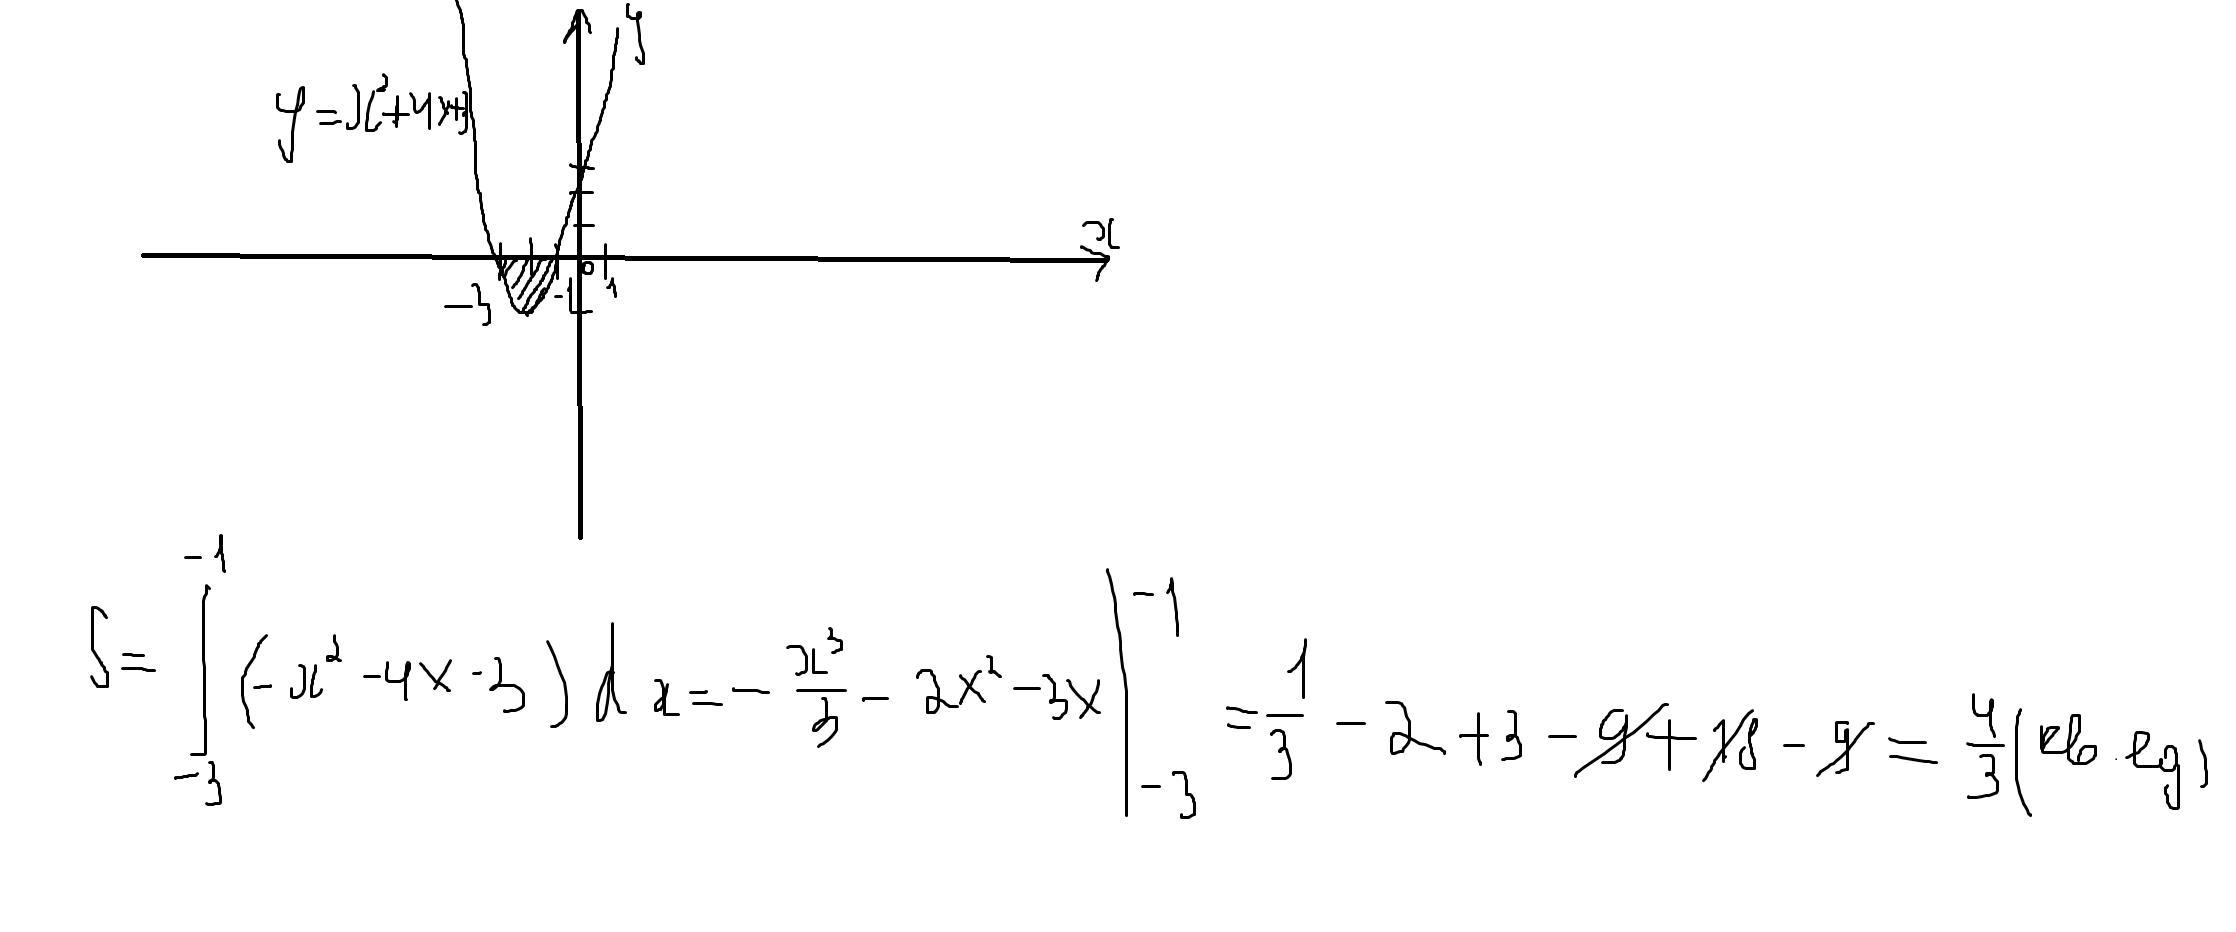 Y 3 5x 6 с осью ox. Площадь фигуры ограниченной линиями x2-x и -x2+3x. Вычислить площадь фигуры, ограниченной осью Ox и линией y=x^2-x. Найдите площадь фигуры ограниченной осью Ox и параболой y 4-x2. Найдите площадь фигуры ограниченной параболой y=x^2-4x+3.